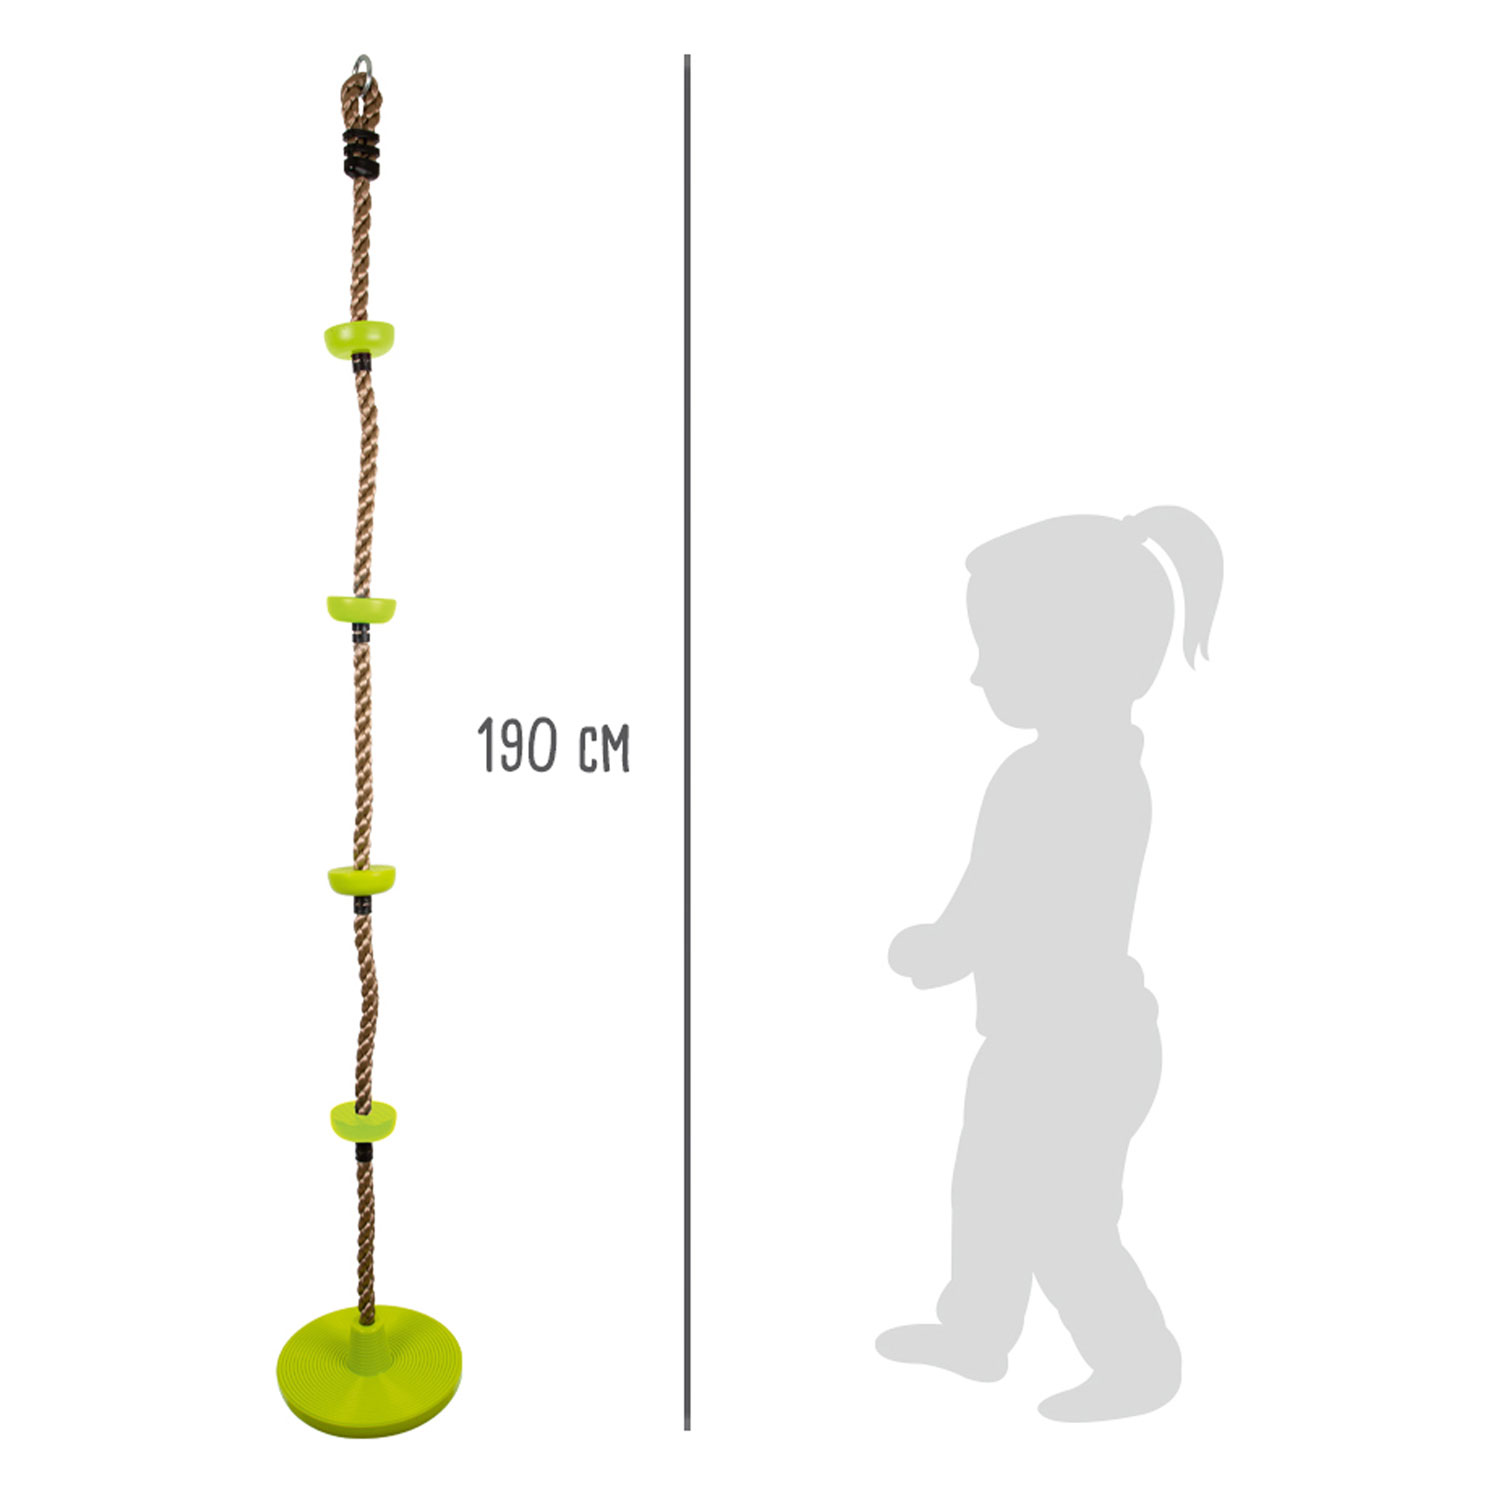 Small Foot - Kletterseil und Schaukel 2in1 Grün, 190cm